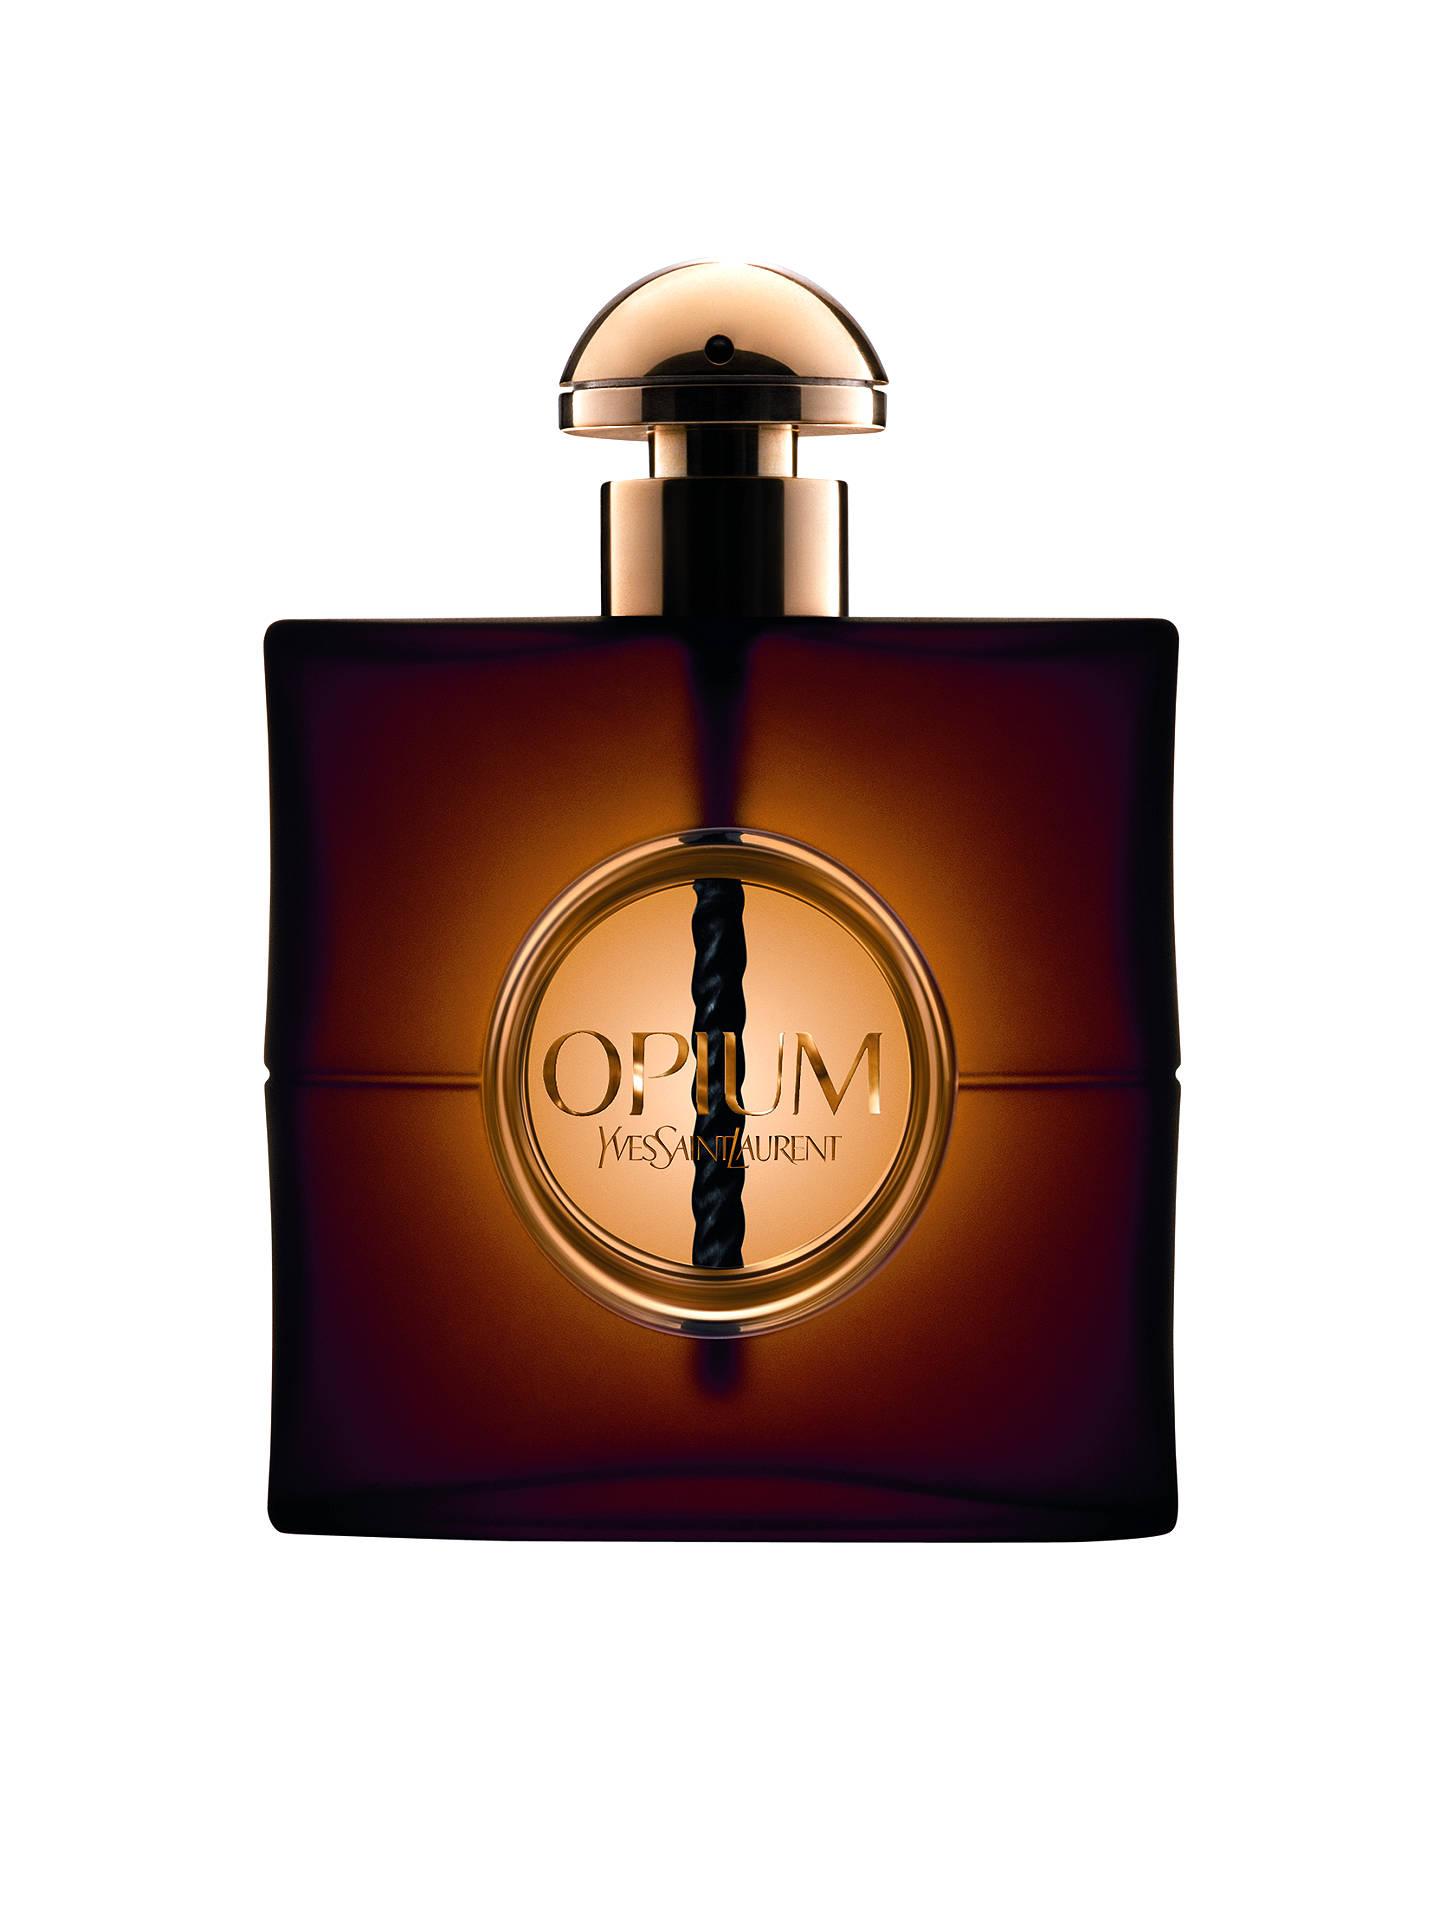 Yves Saint Laurent Opium Eau de Parfum at John Lewis & Partners